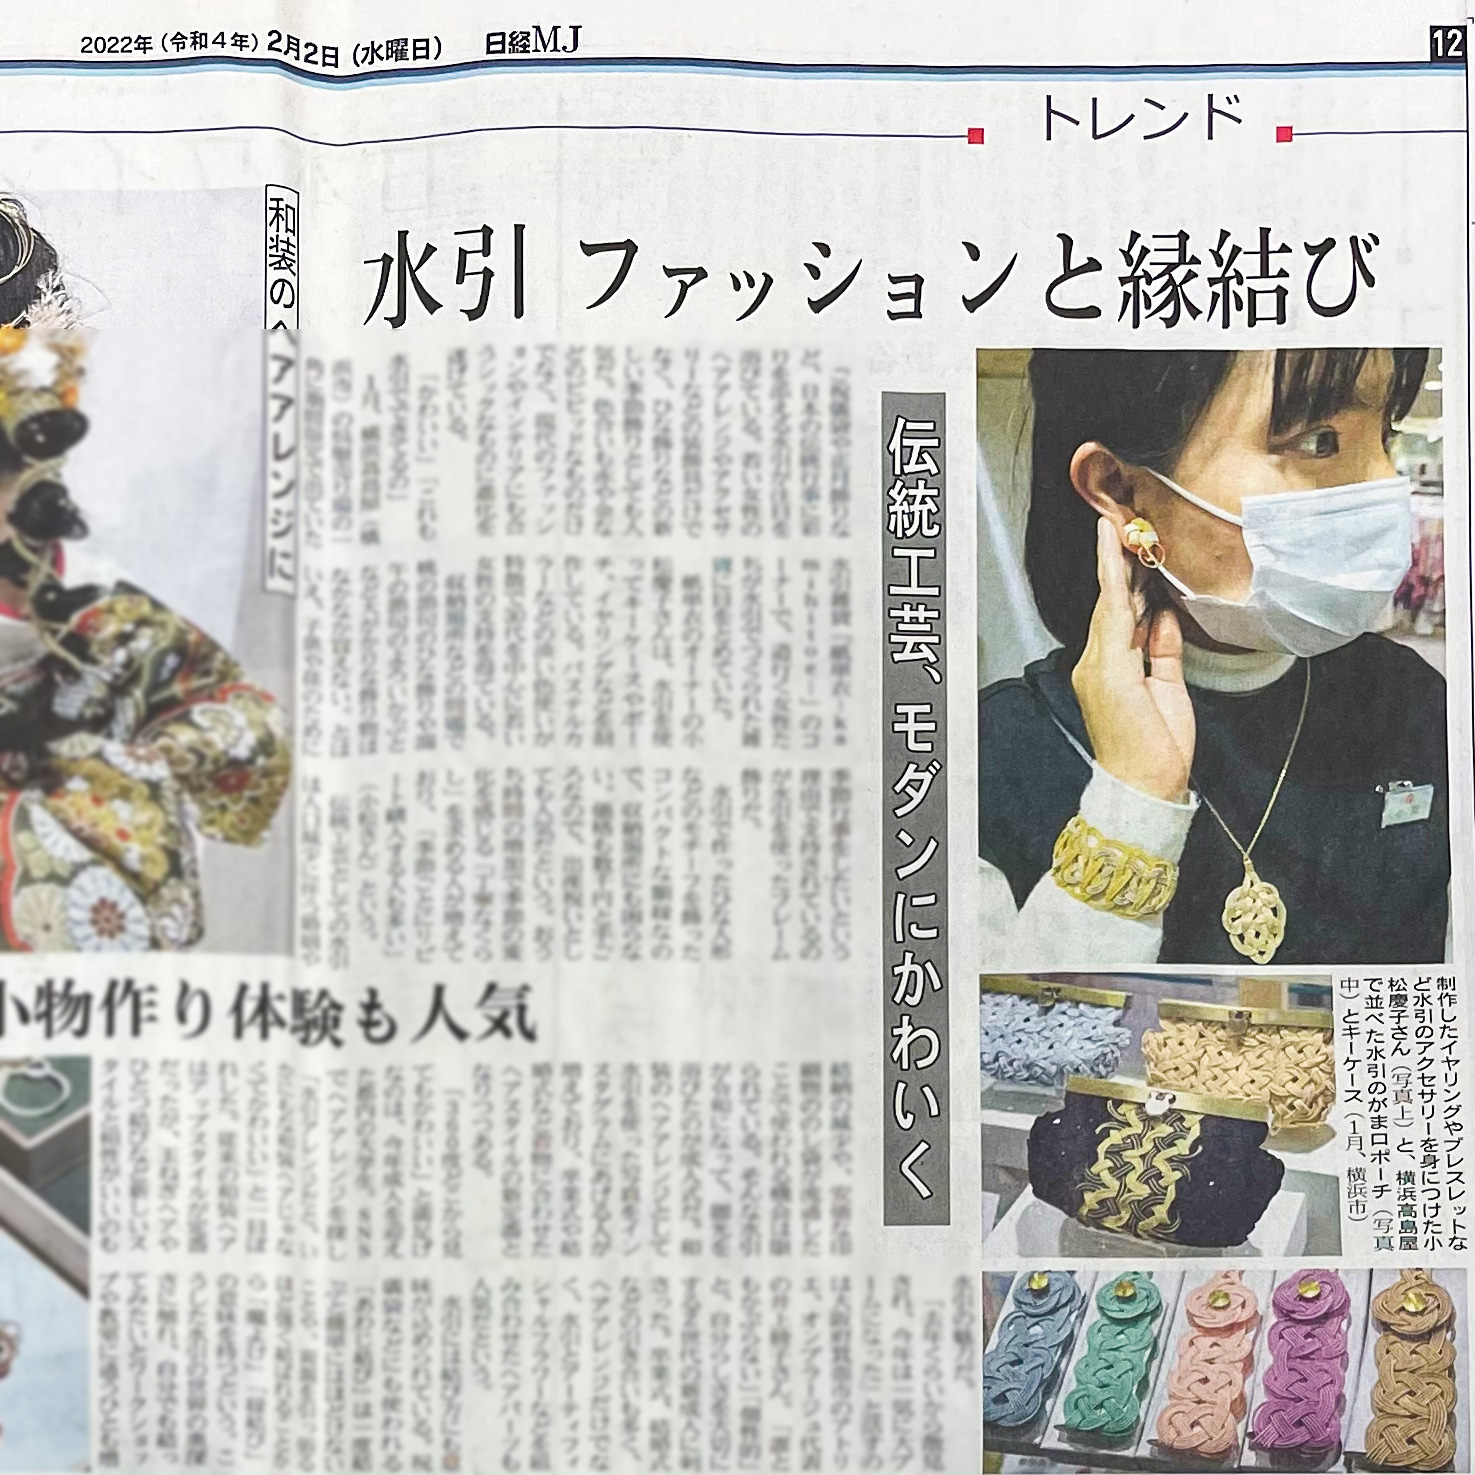 【メディア掲載】2月2日（水）日経MJ 12面トレンド「水引特集」に掲載されました